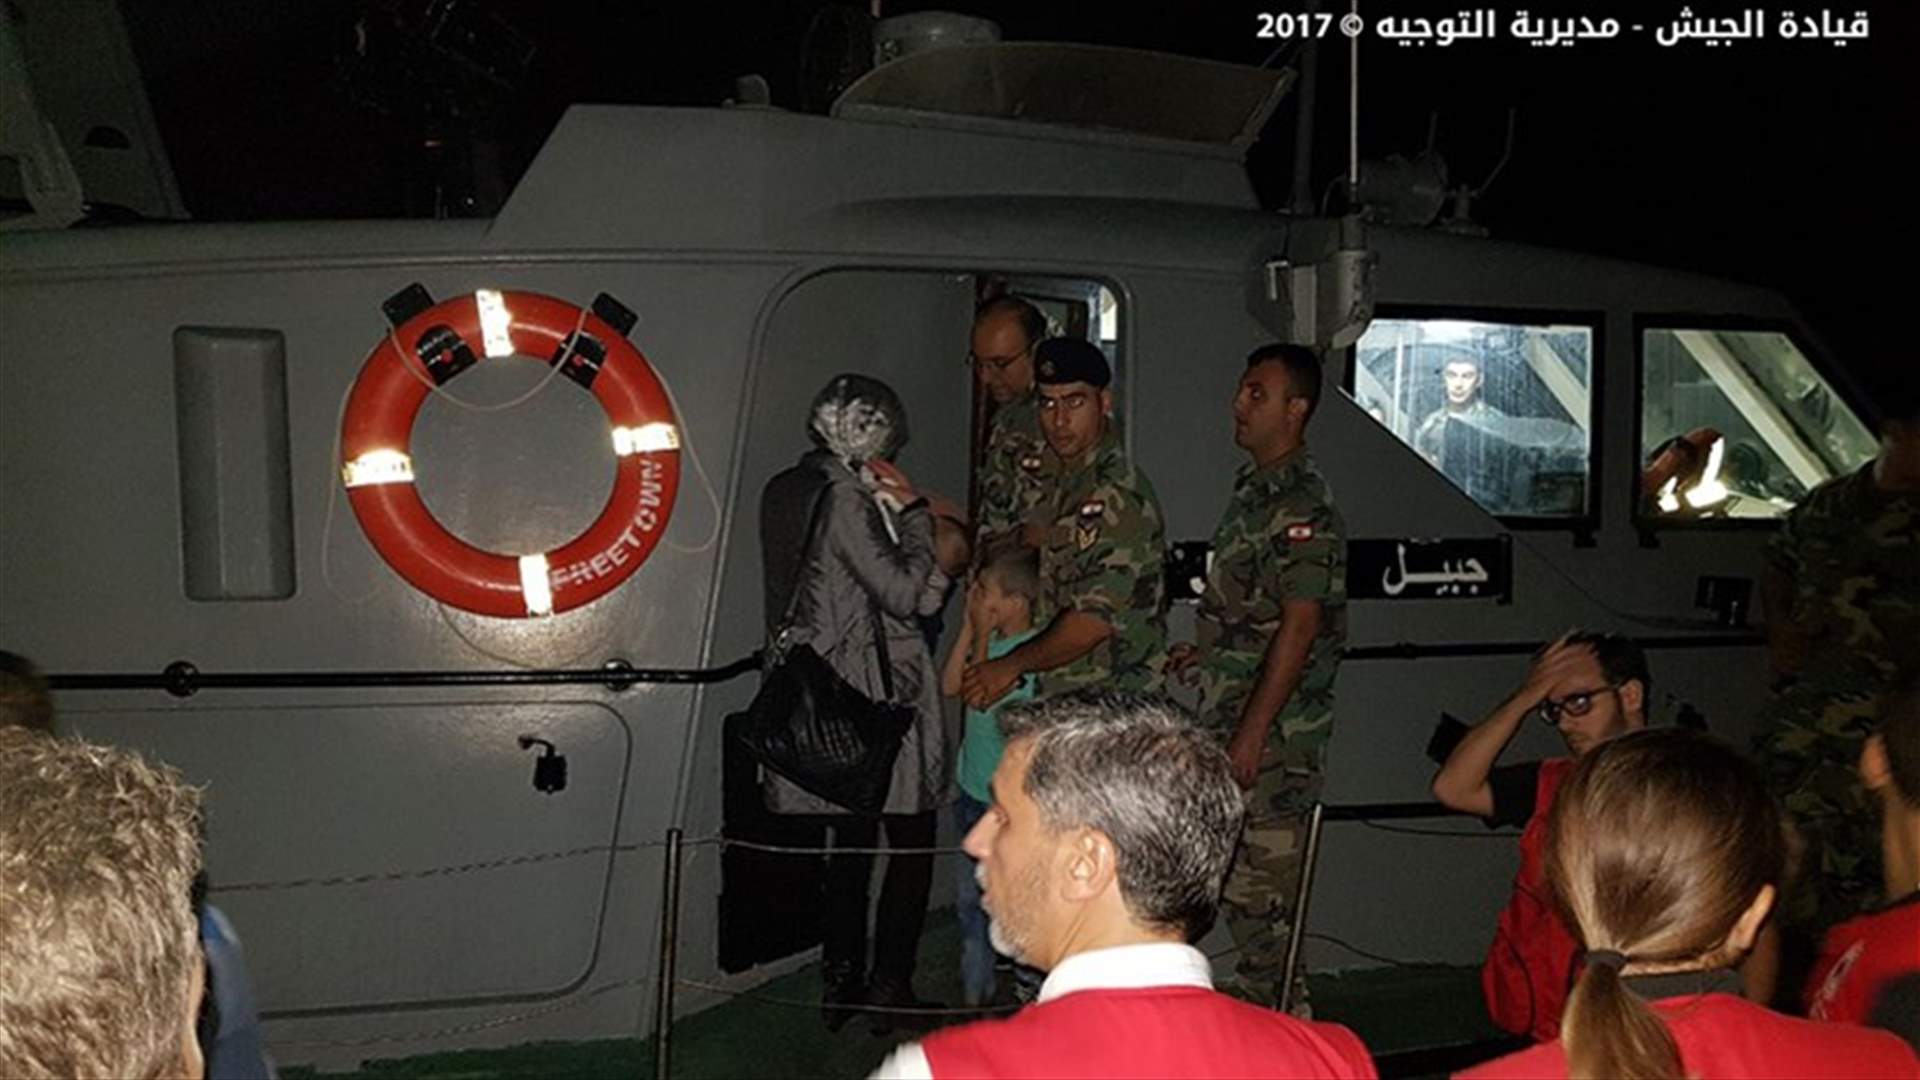 بالصور - إنقاذ 32 سورياً على متن مركب مقابل أنفة